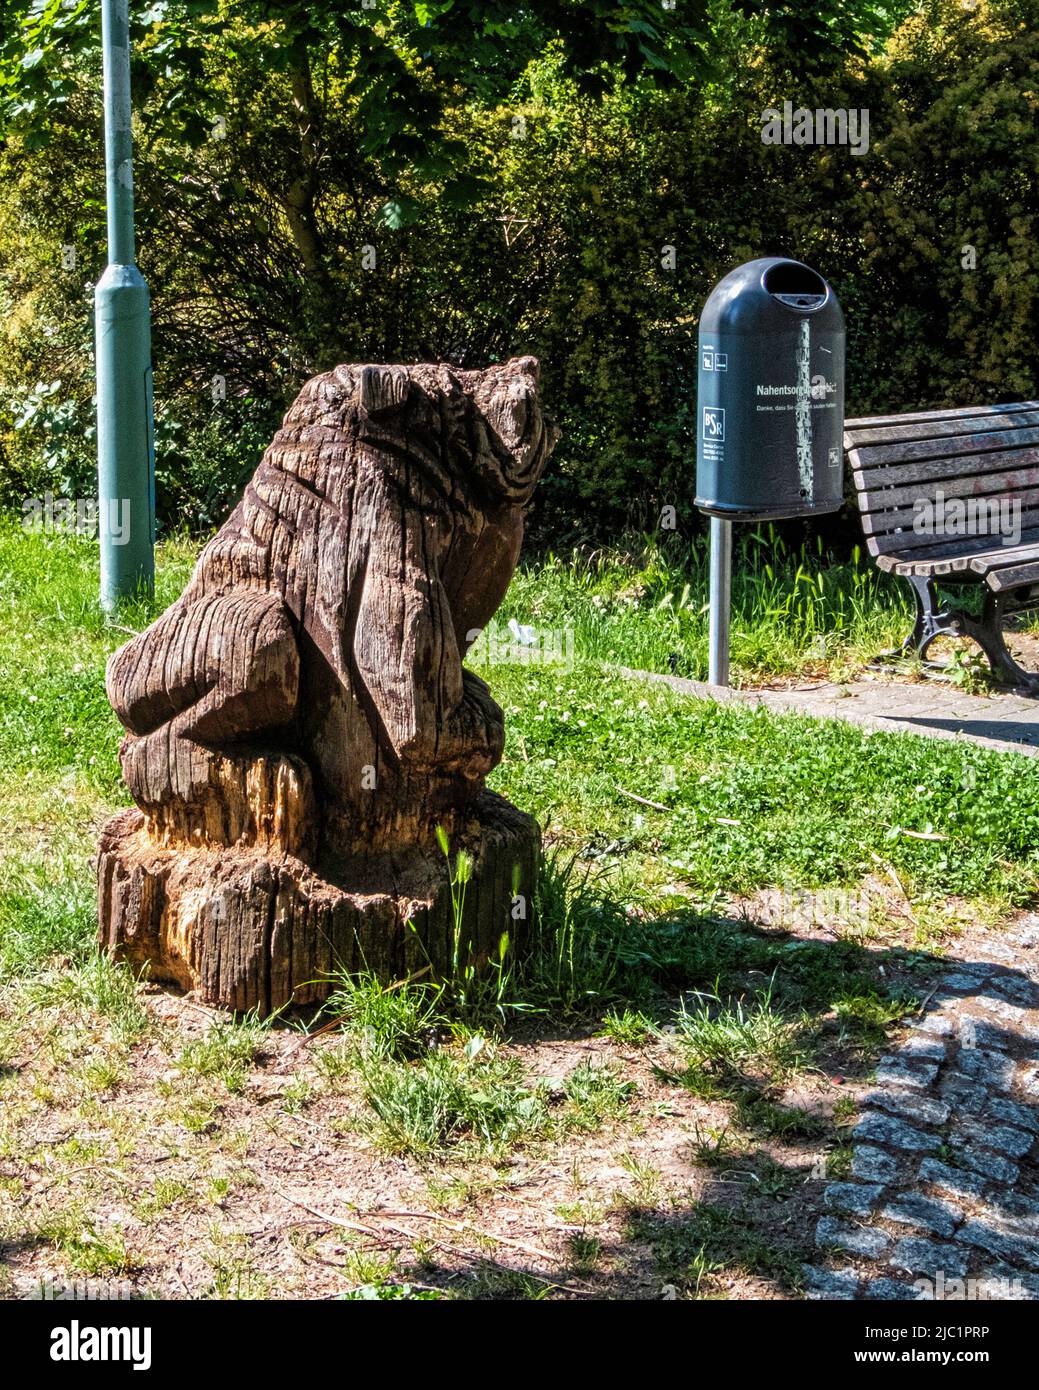 Weathered wooden sculpture in Children's play area, Horst caspar Steig, Gropiusstadt-Berlin,Germany Stock Photo